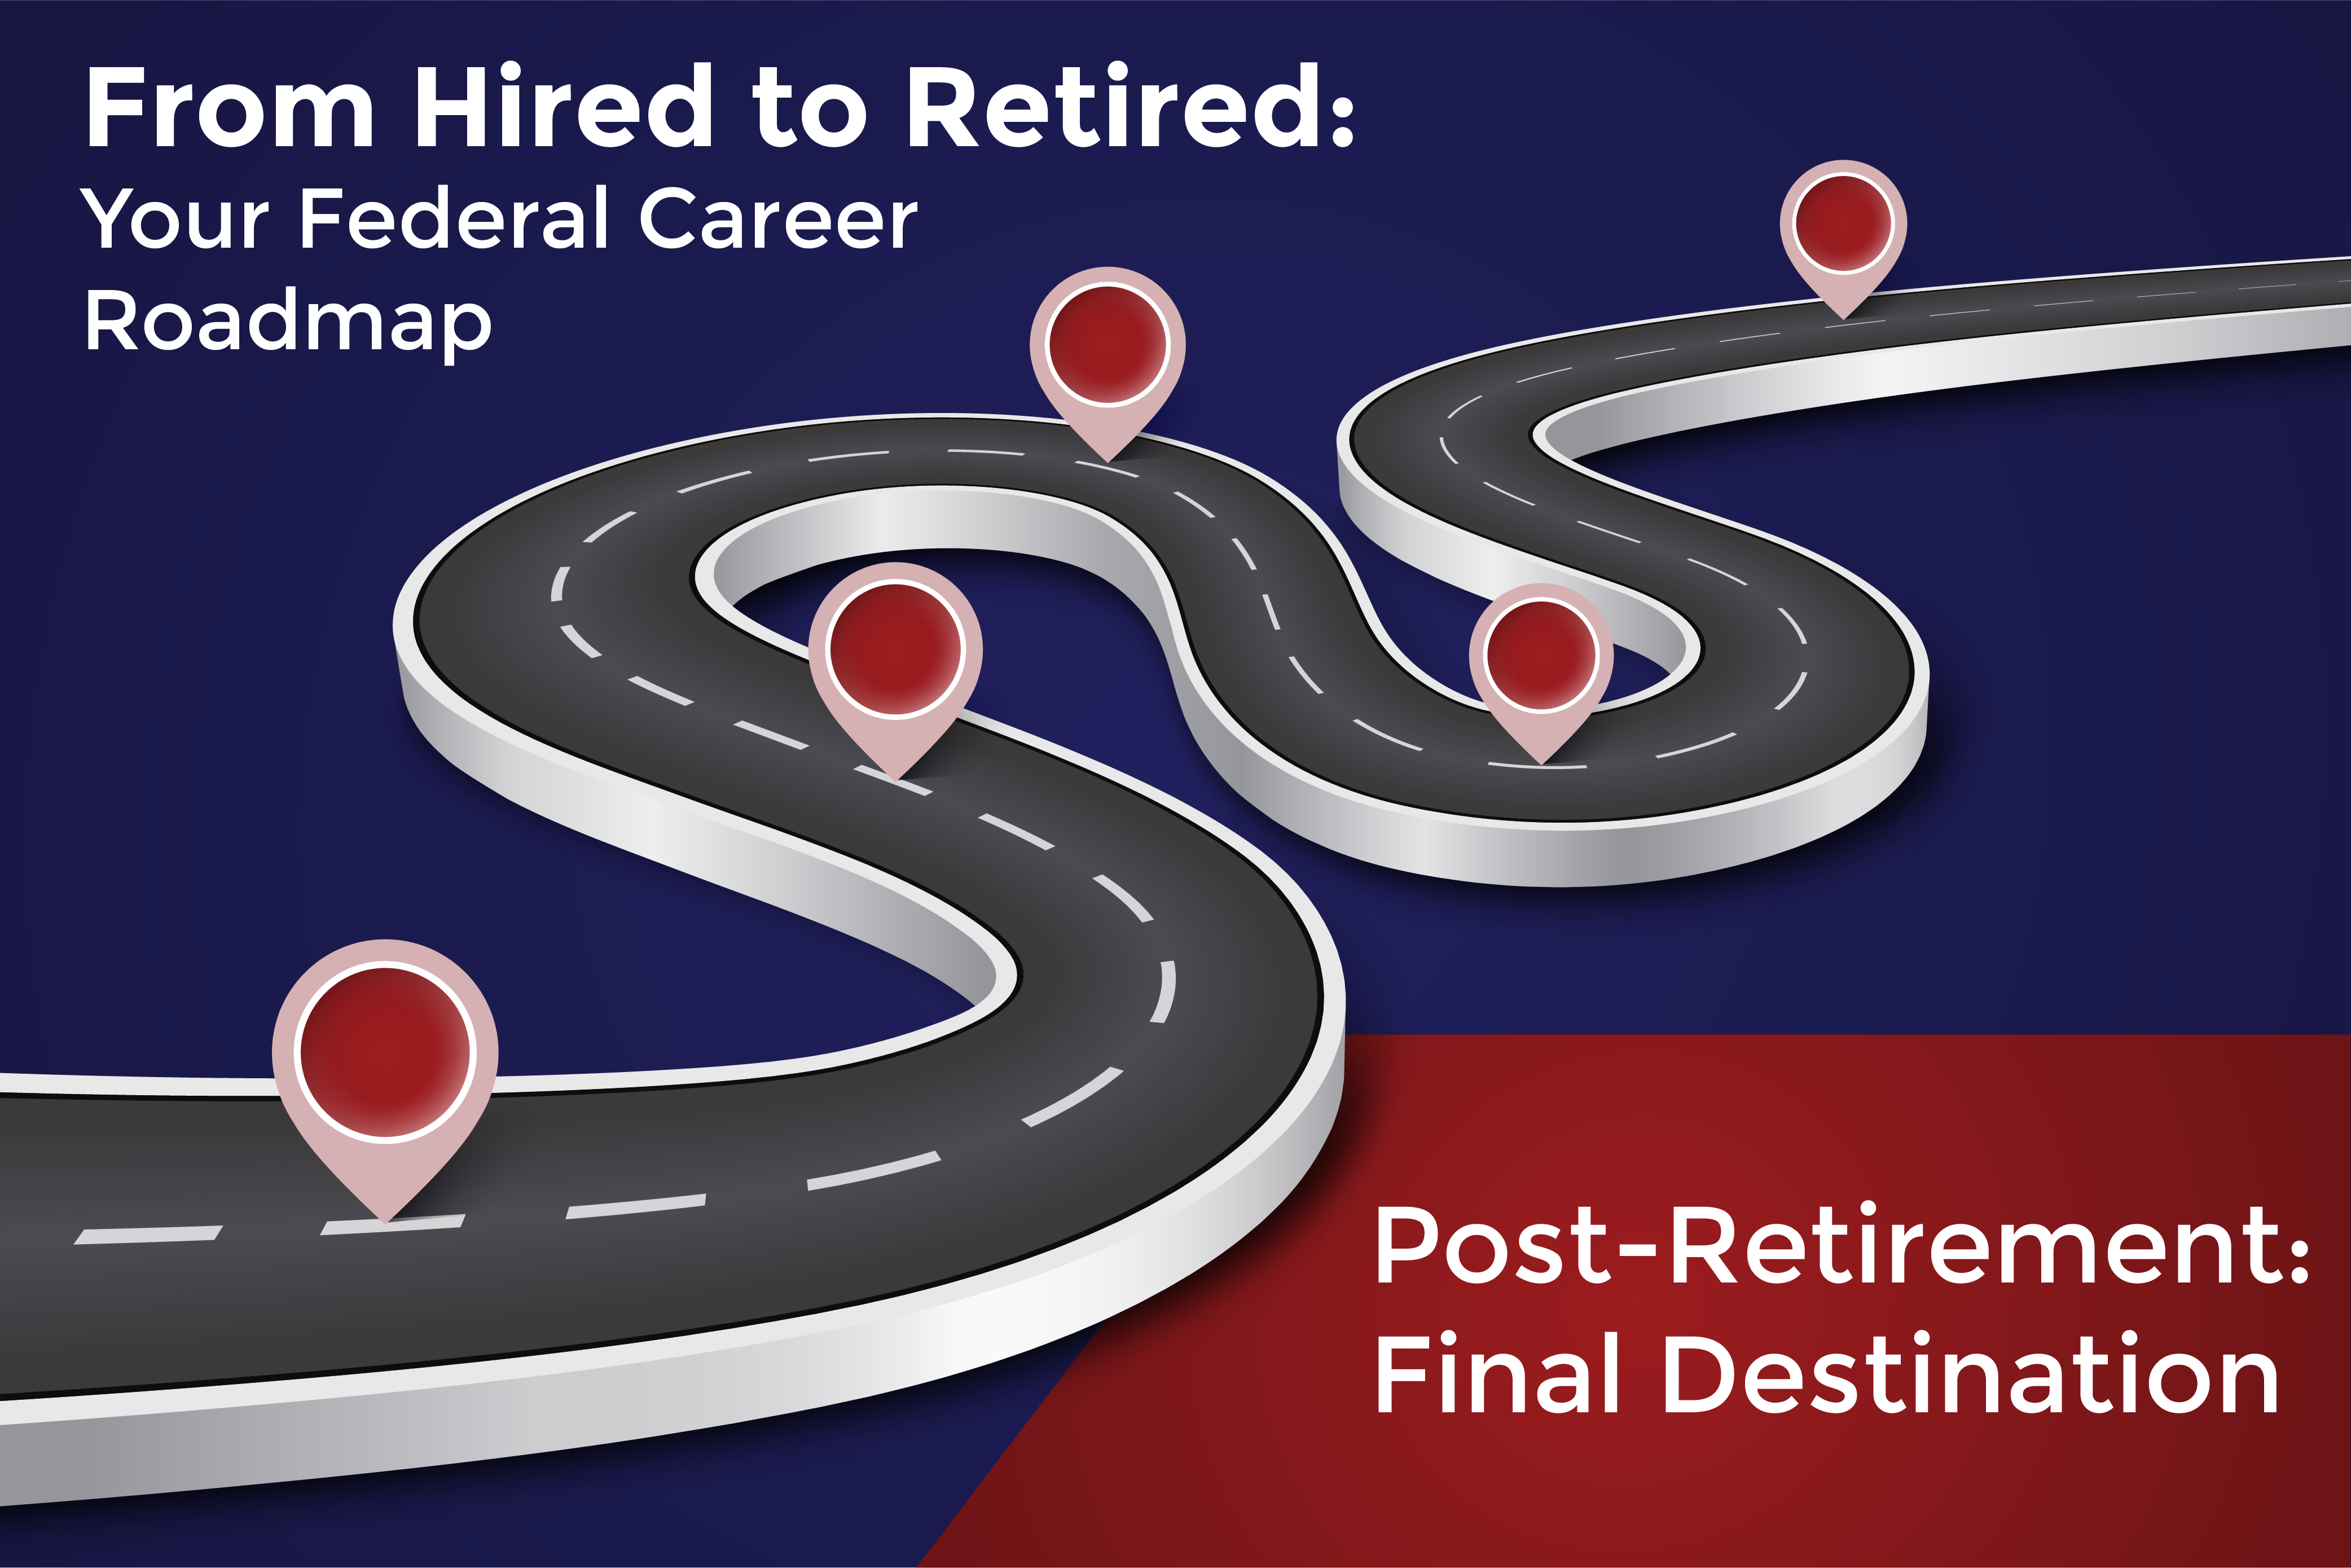 Federal Career Roadmap_Post-Retirement